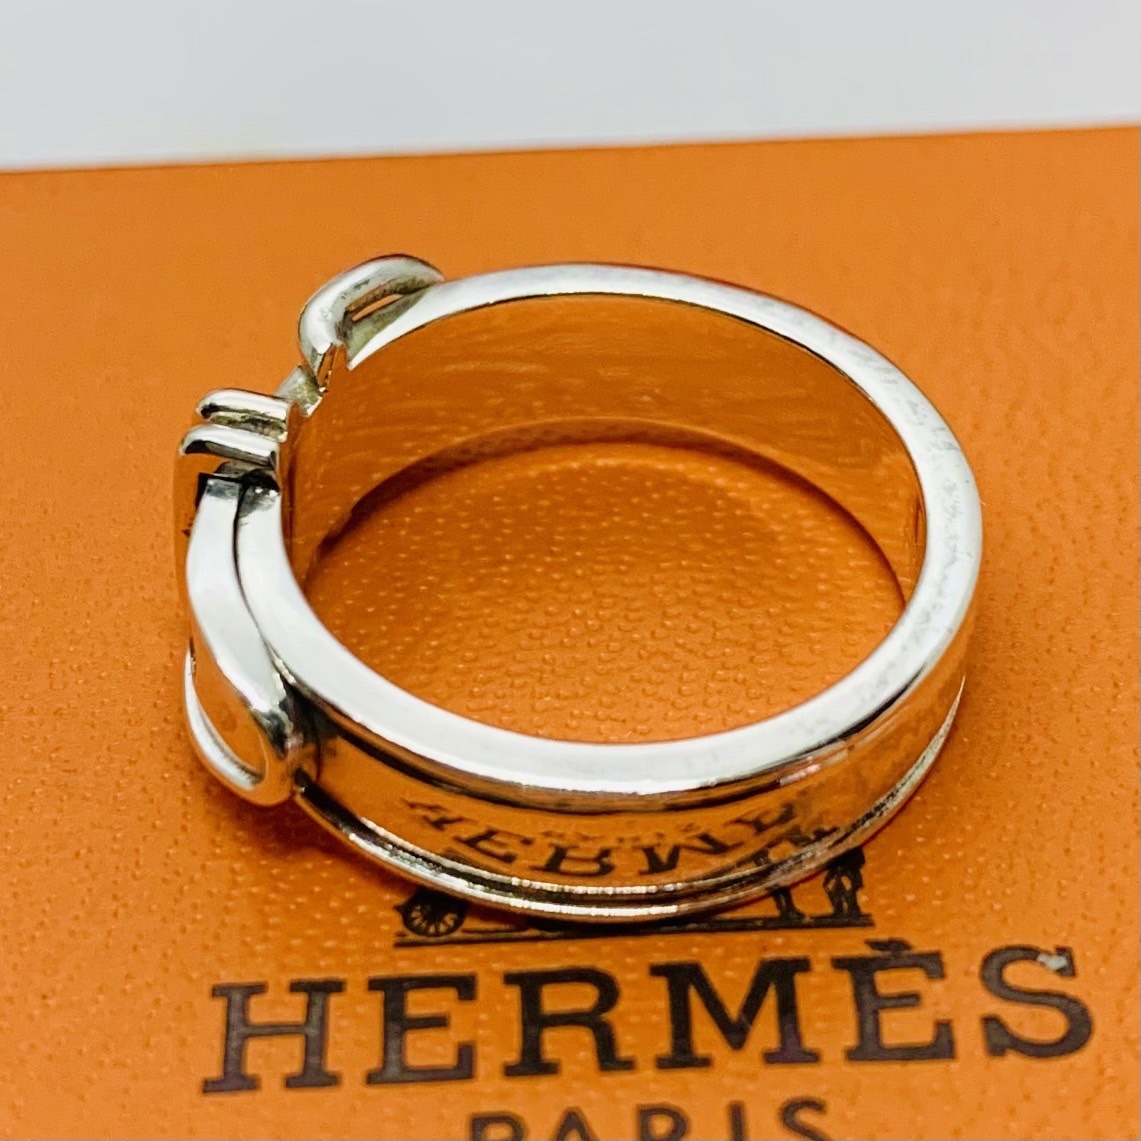 C261 редкий первый период передвижной type превосходный товар Hermes гибрид сельдерея и салата -ru черный a кольцо печать 50